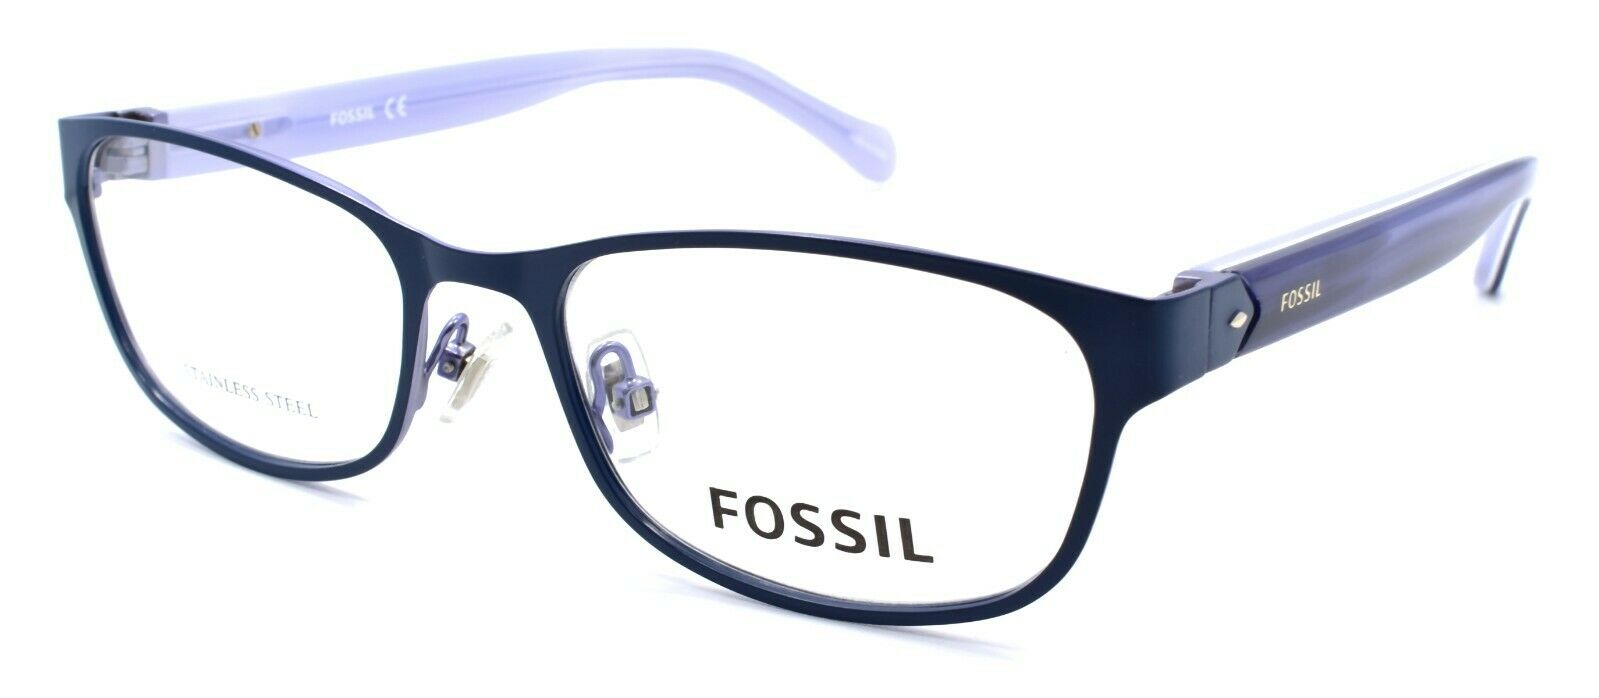 1-Fossil FOS 7023 RCT Women's Eyeglasses Frames 51-17-140 Matte Blue-716736029207-IKSpecs